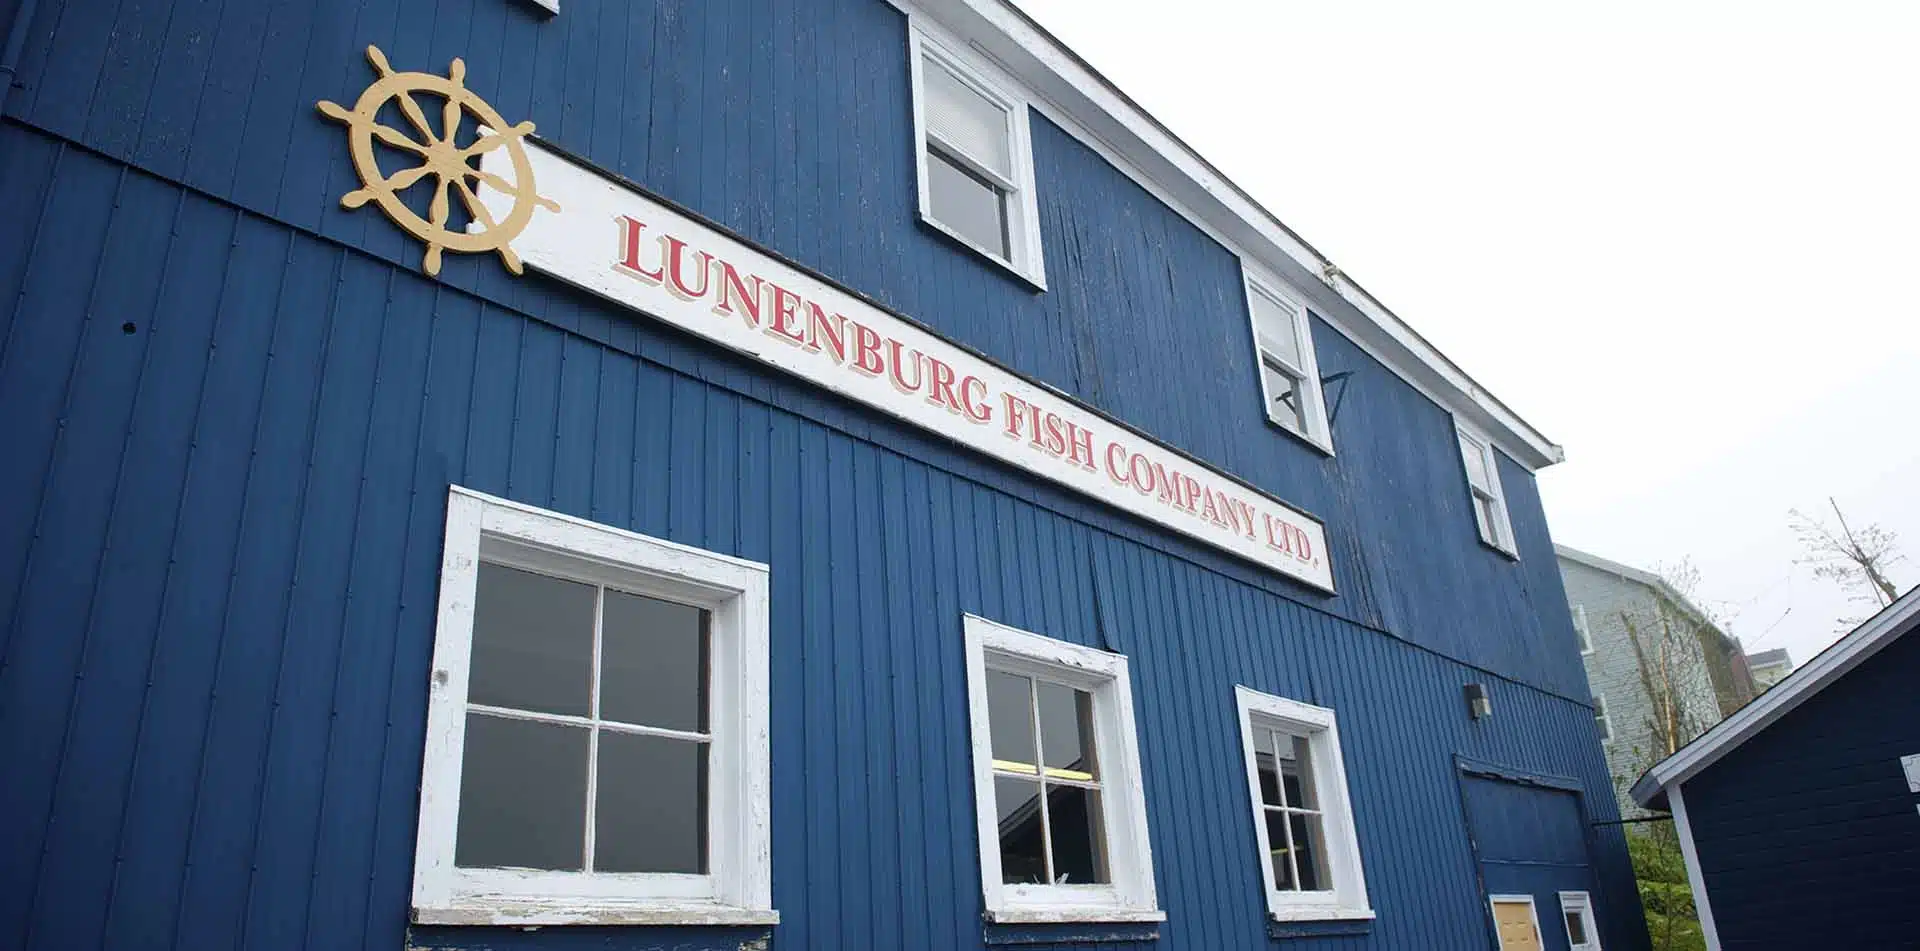 Lunenburg Fishing Company in Nova Scotia, Canada